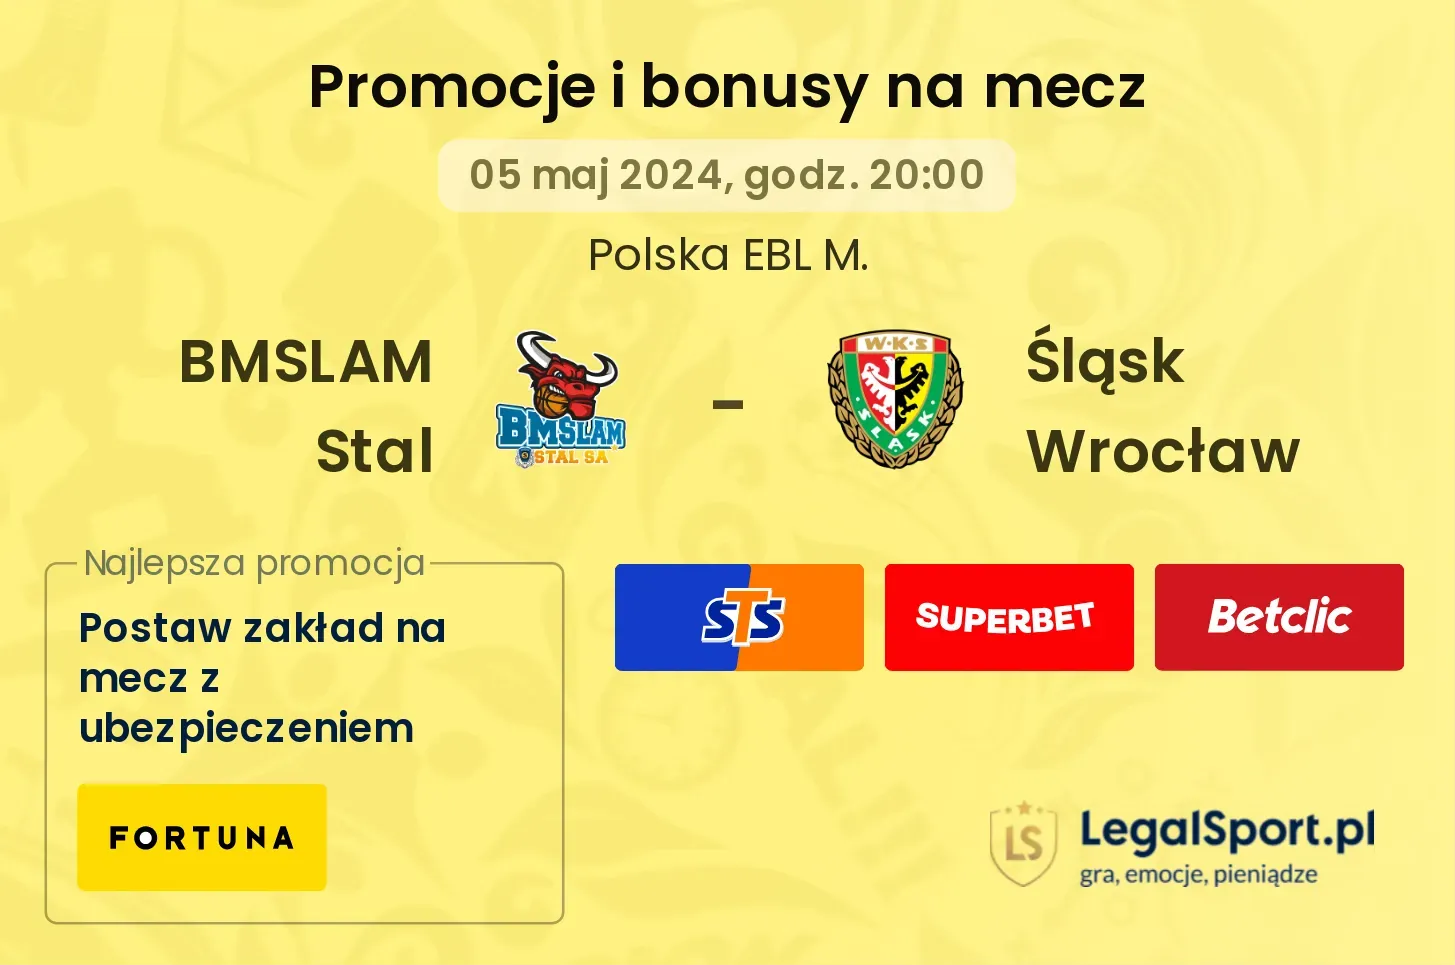 BMSLAM Stal - Śląsk Wrocław promocje i bonusy (05.05, 20:00)